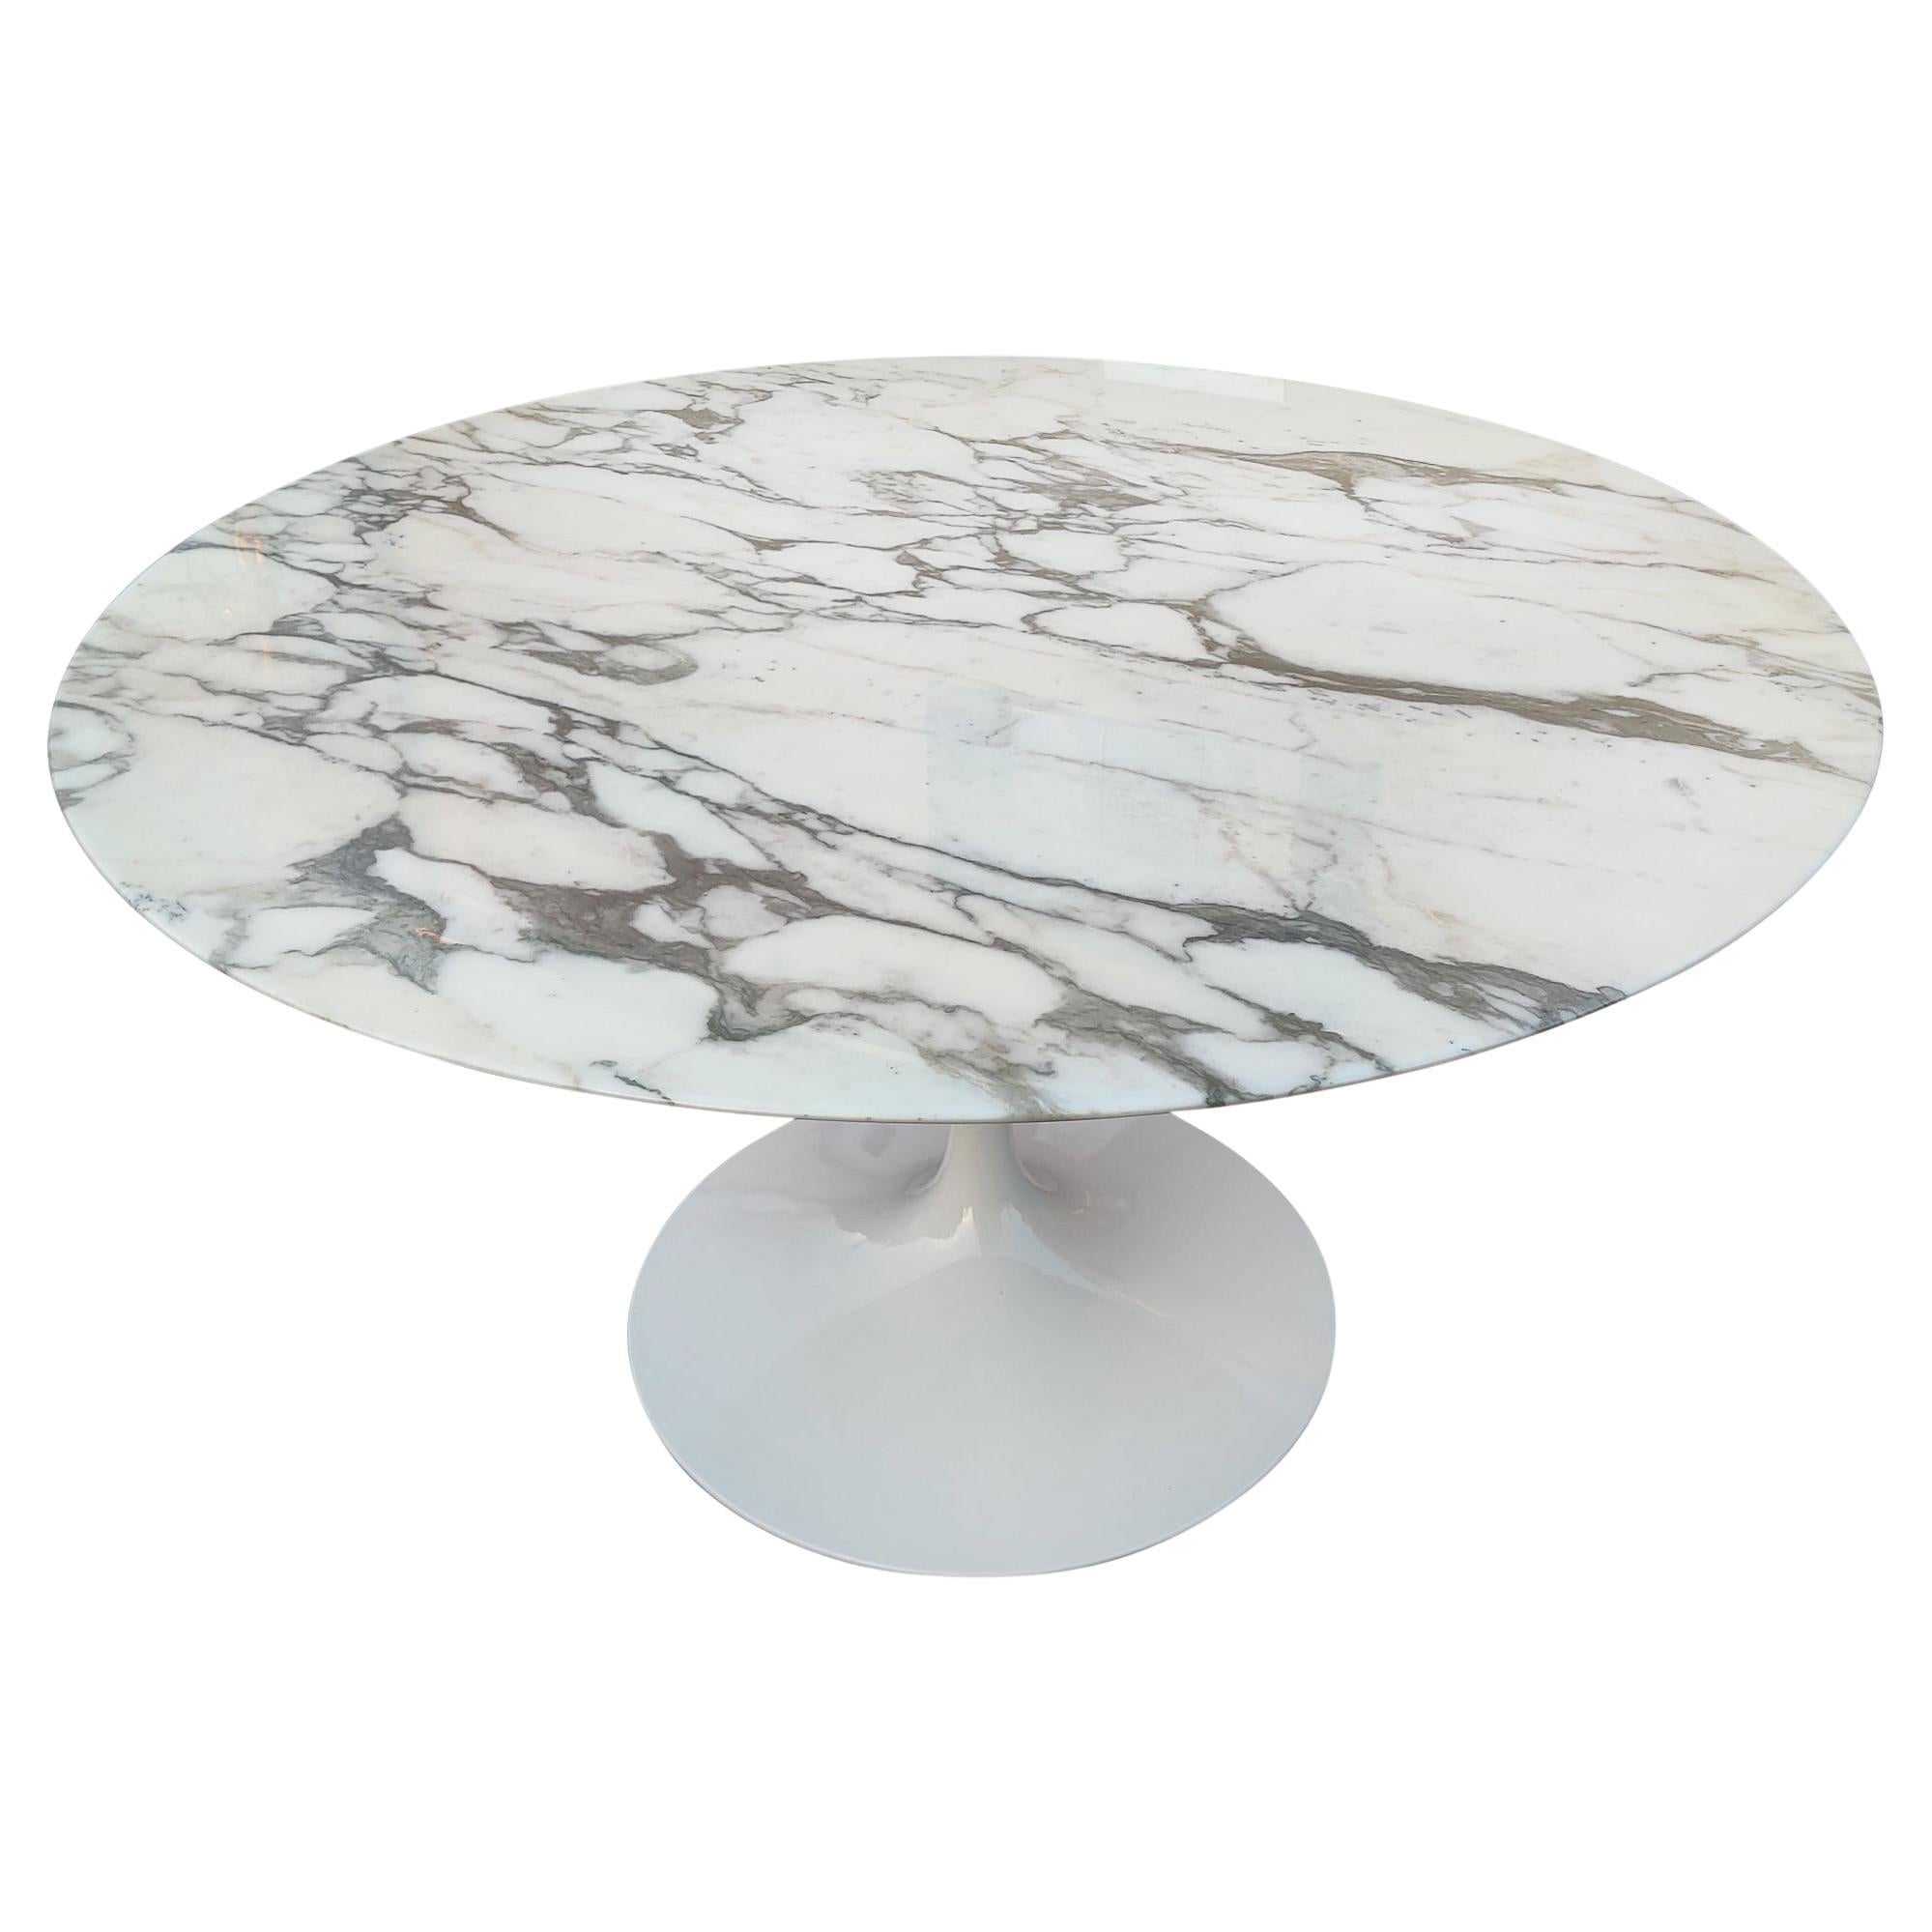 Eero Saarinen Knoll Tulip Round Dining Table 54"" DIA Arabescato Marble Glossy 